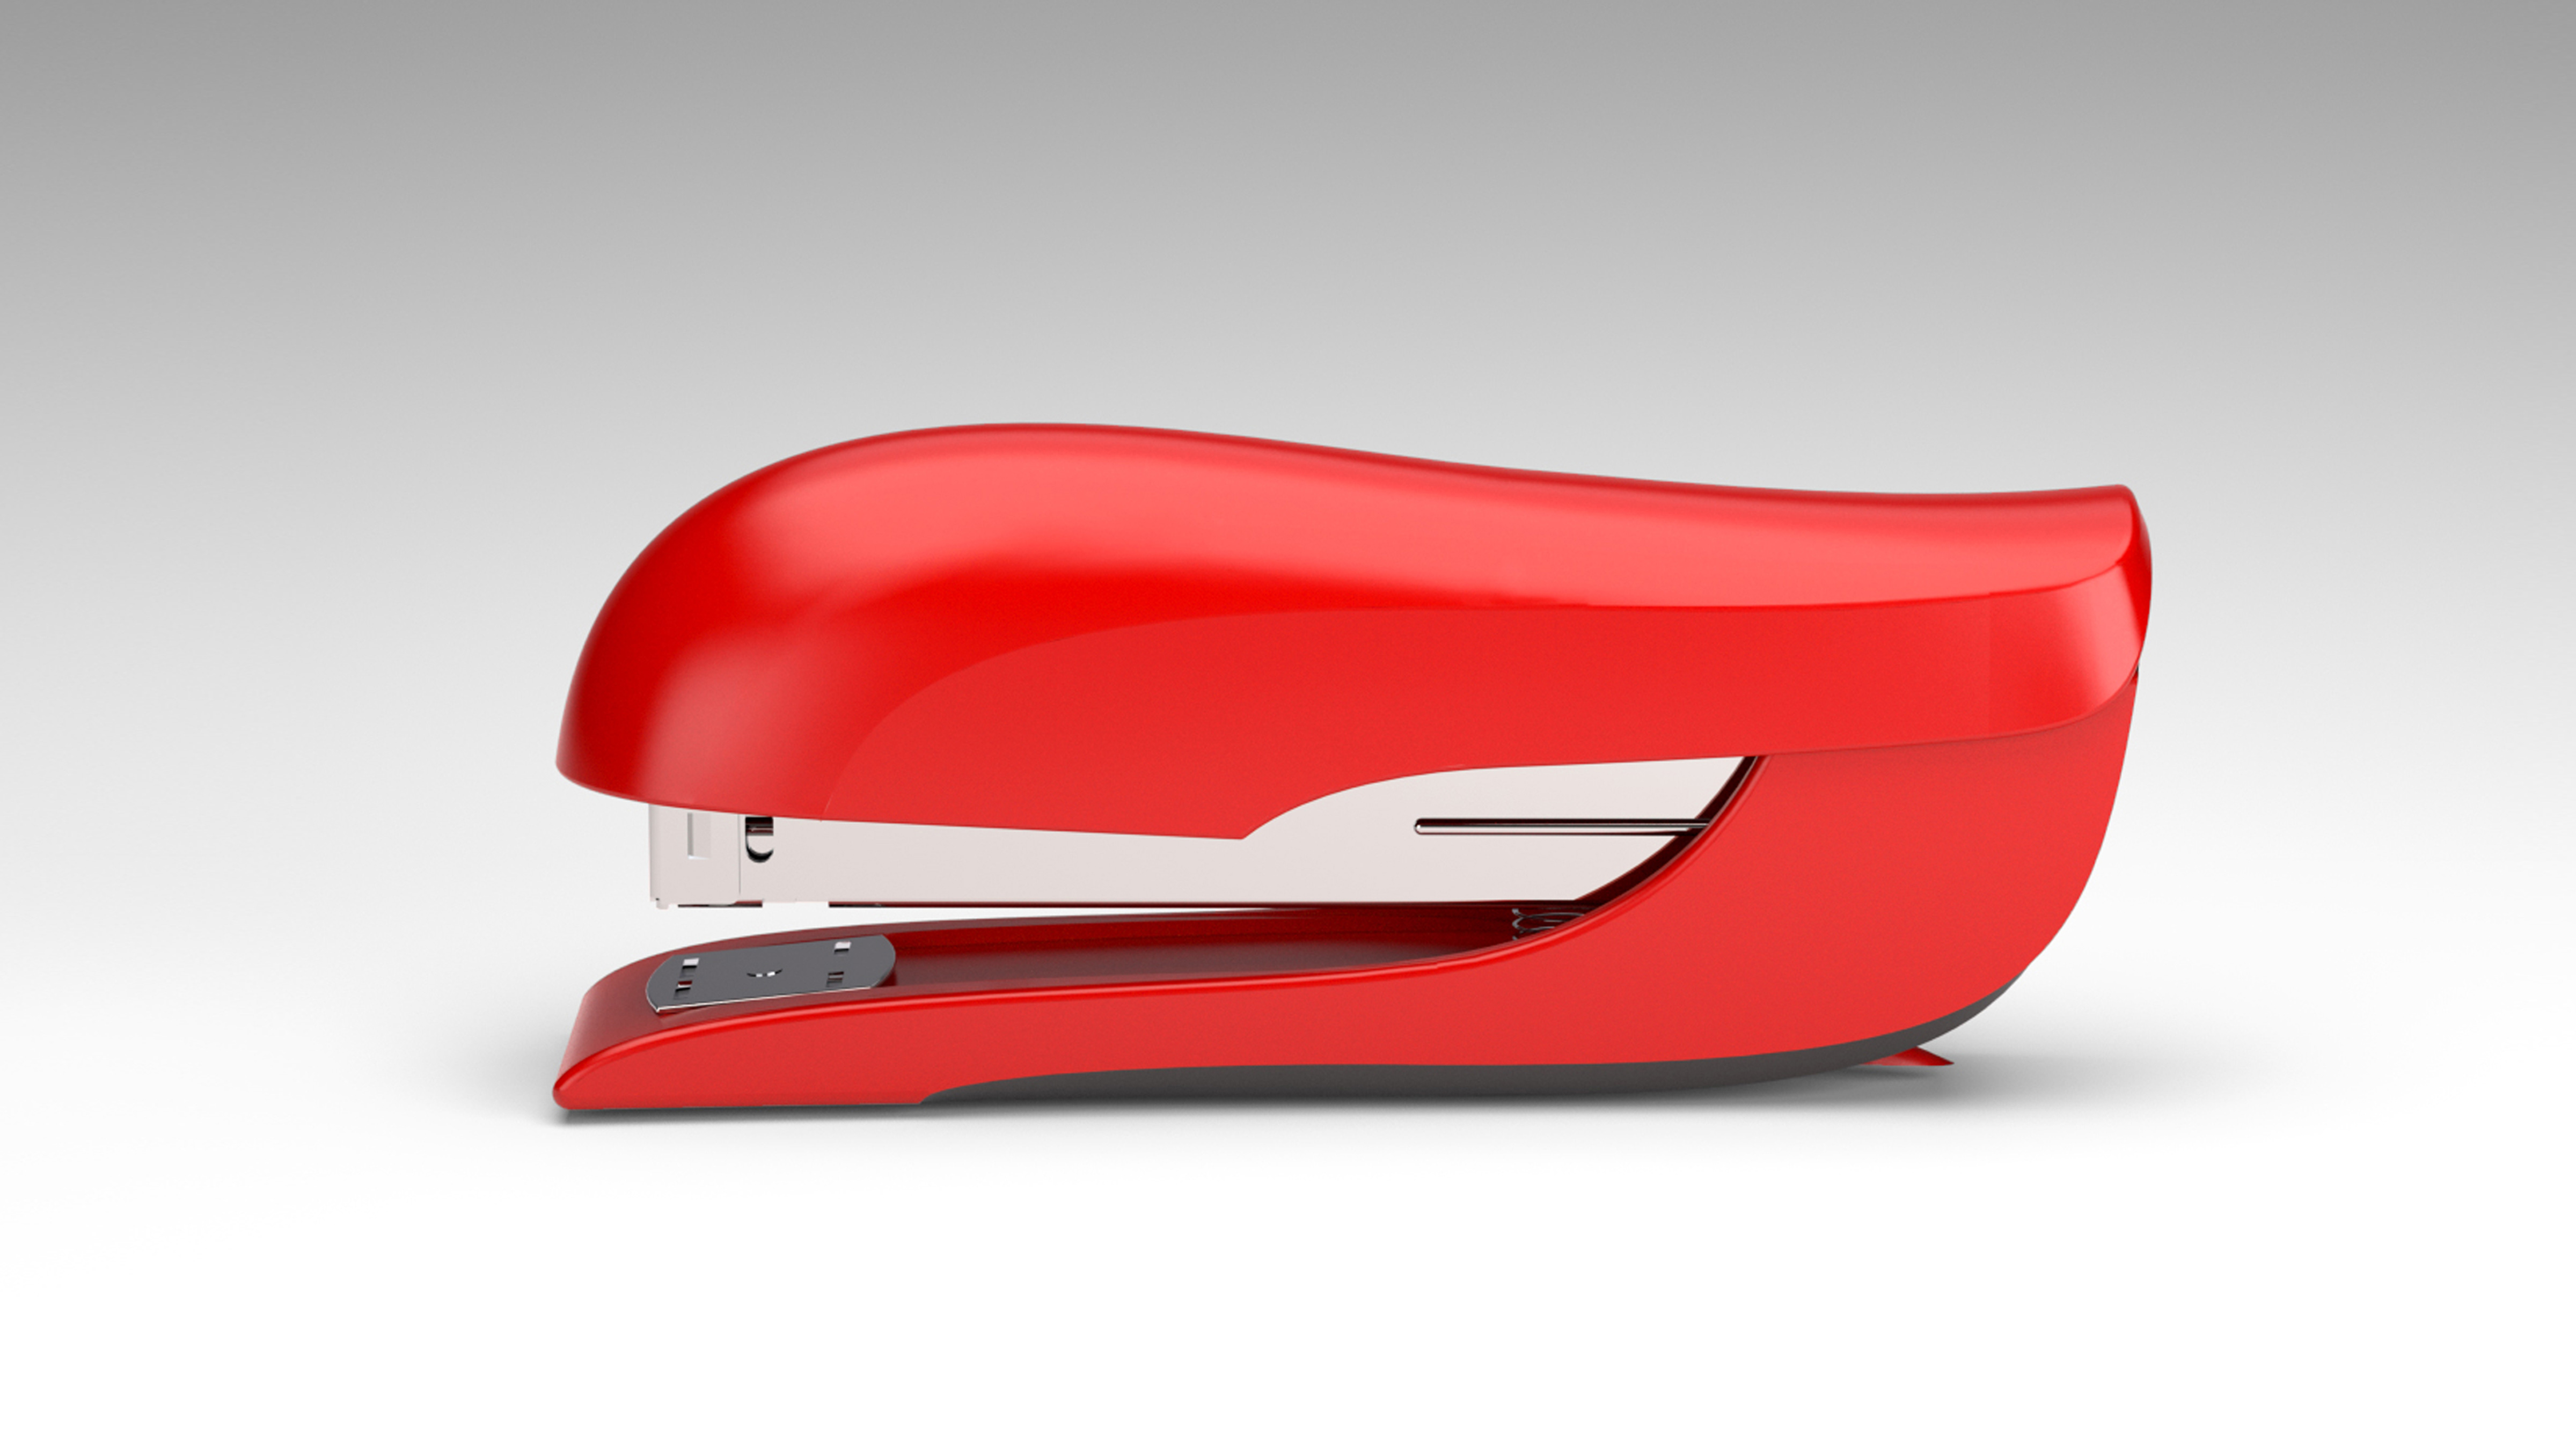 x acto stapler consumer product design 26